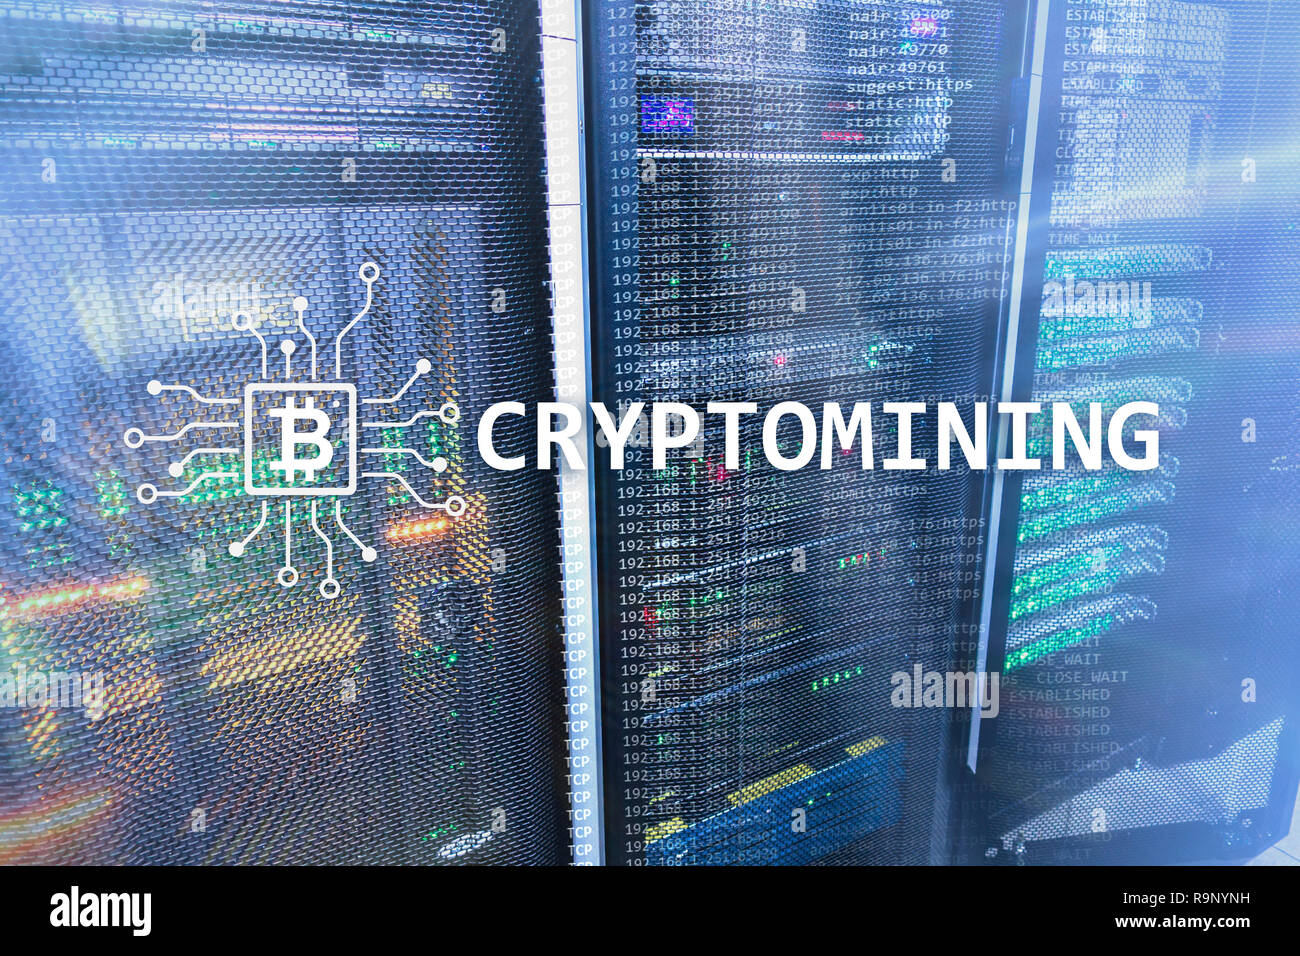 L'exploitation minière Cryptocurrency concept sur arrière-plan de la salle serveur. Banque D'Images